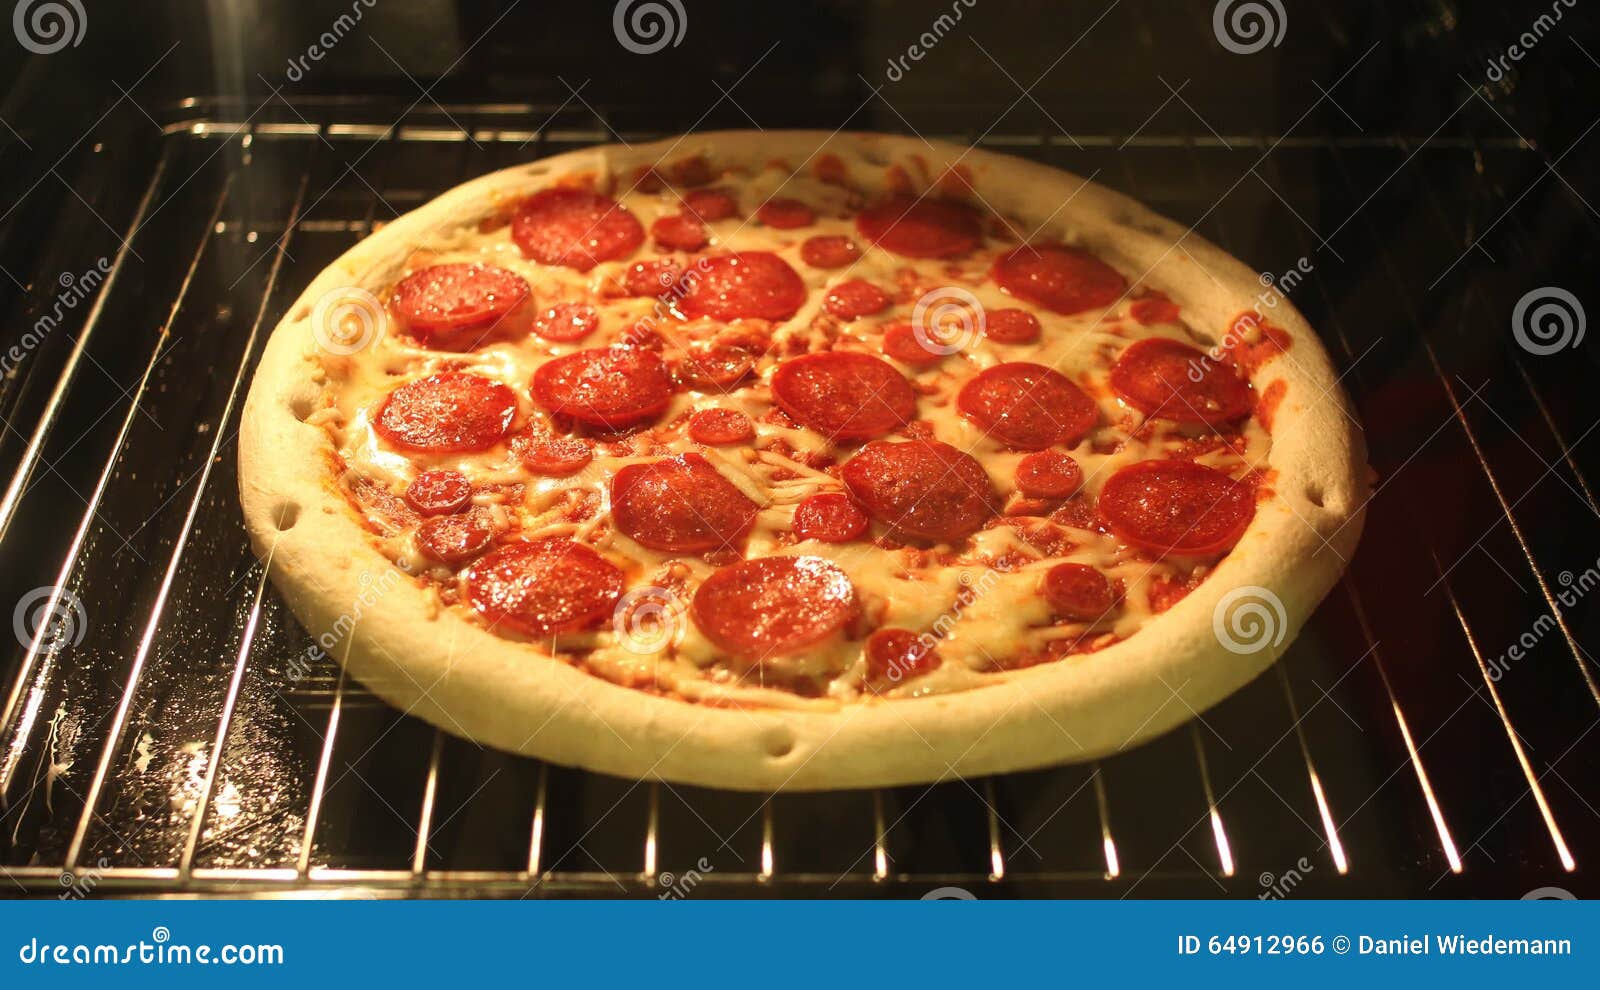 пиццу на фольге в духовке можно ли печь фото 71